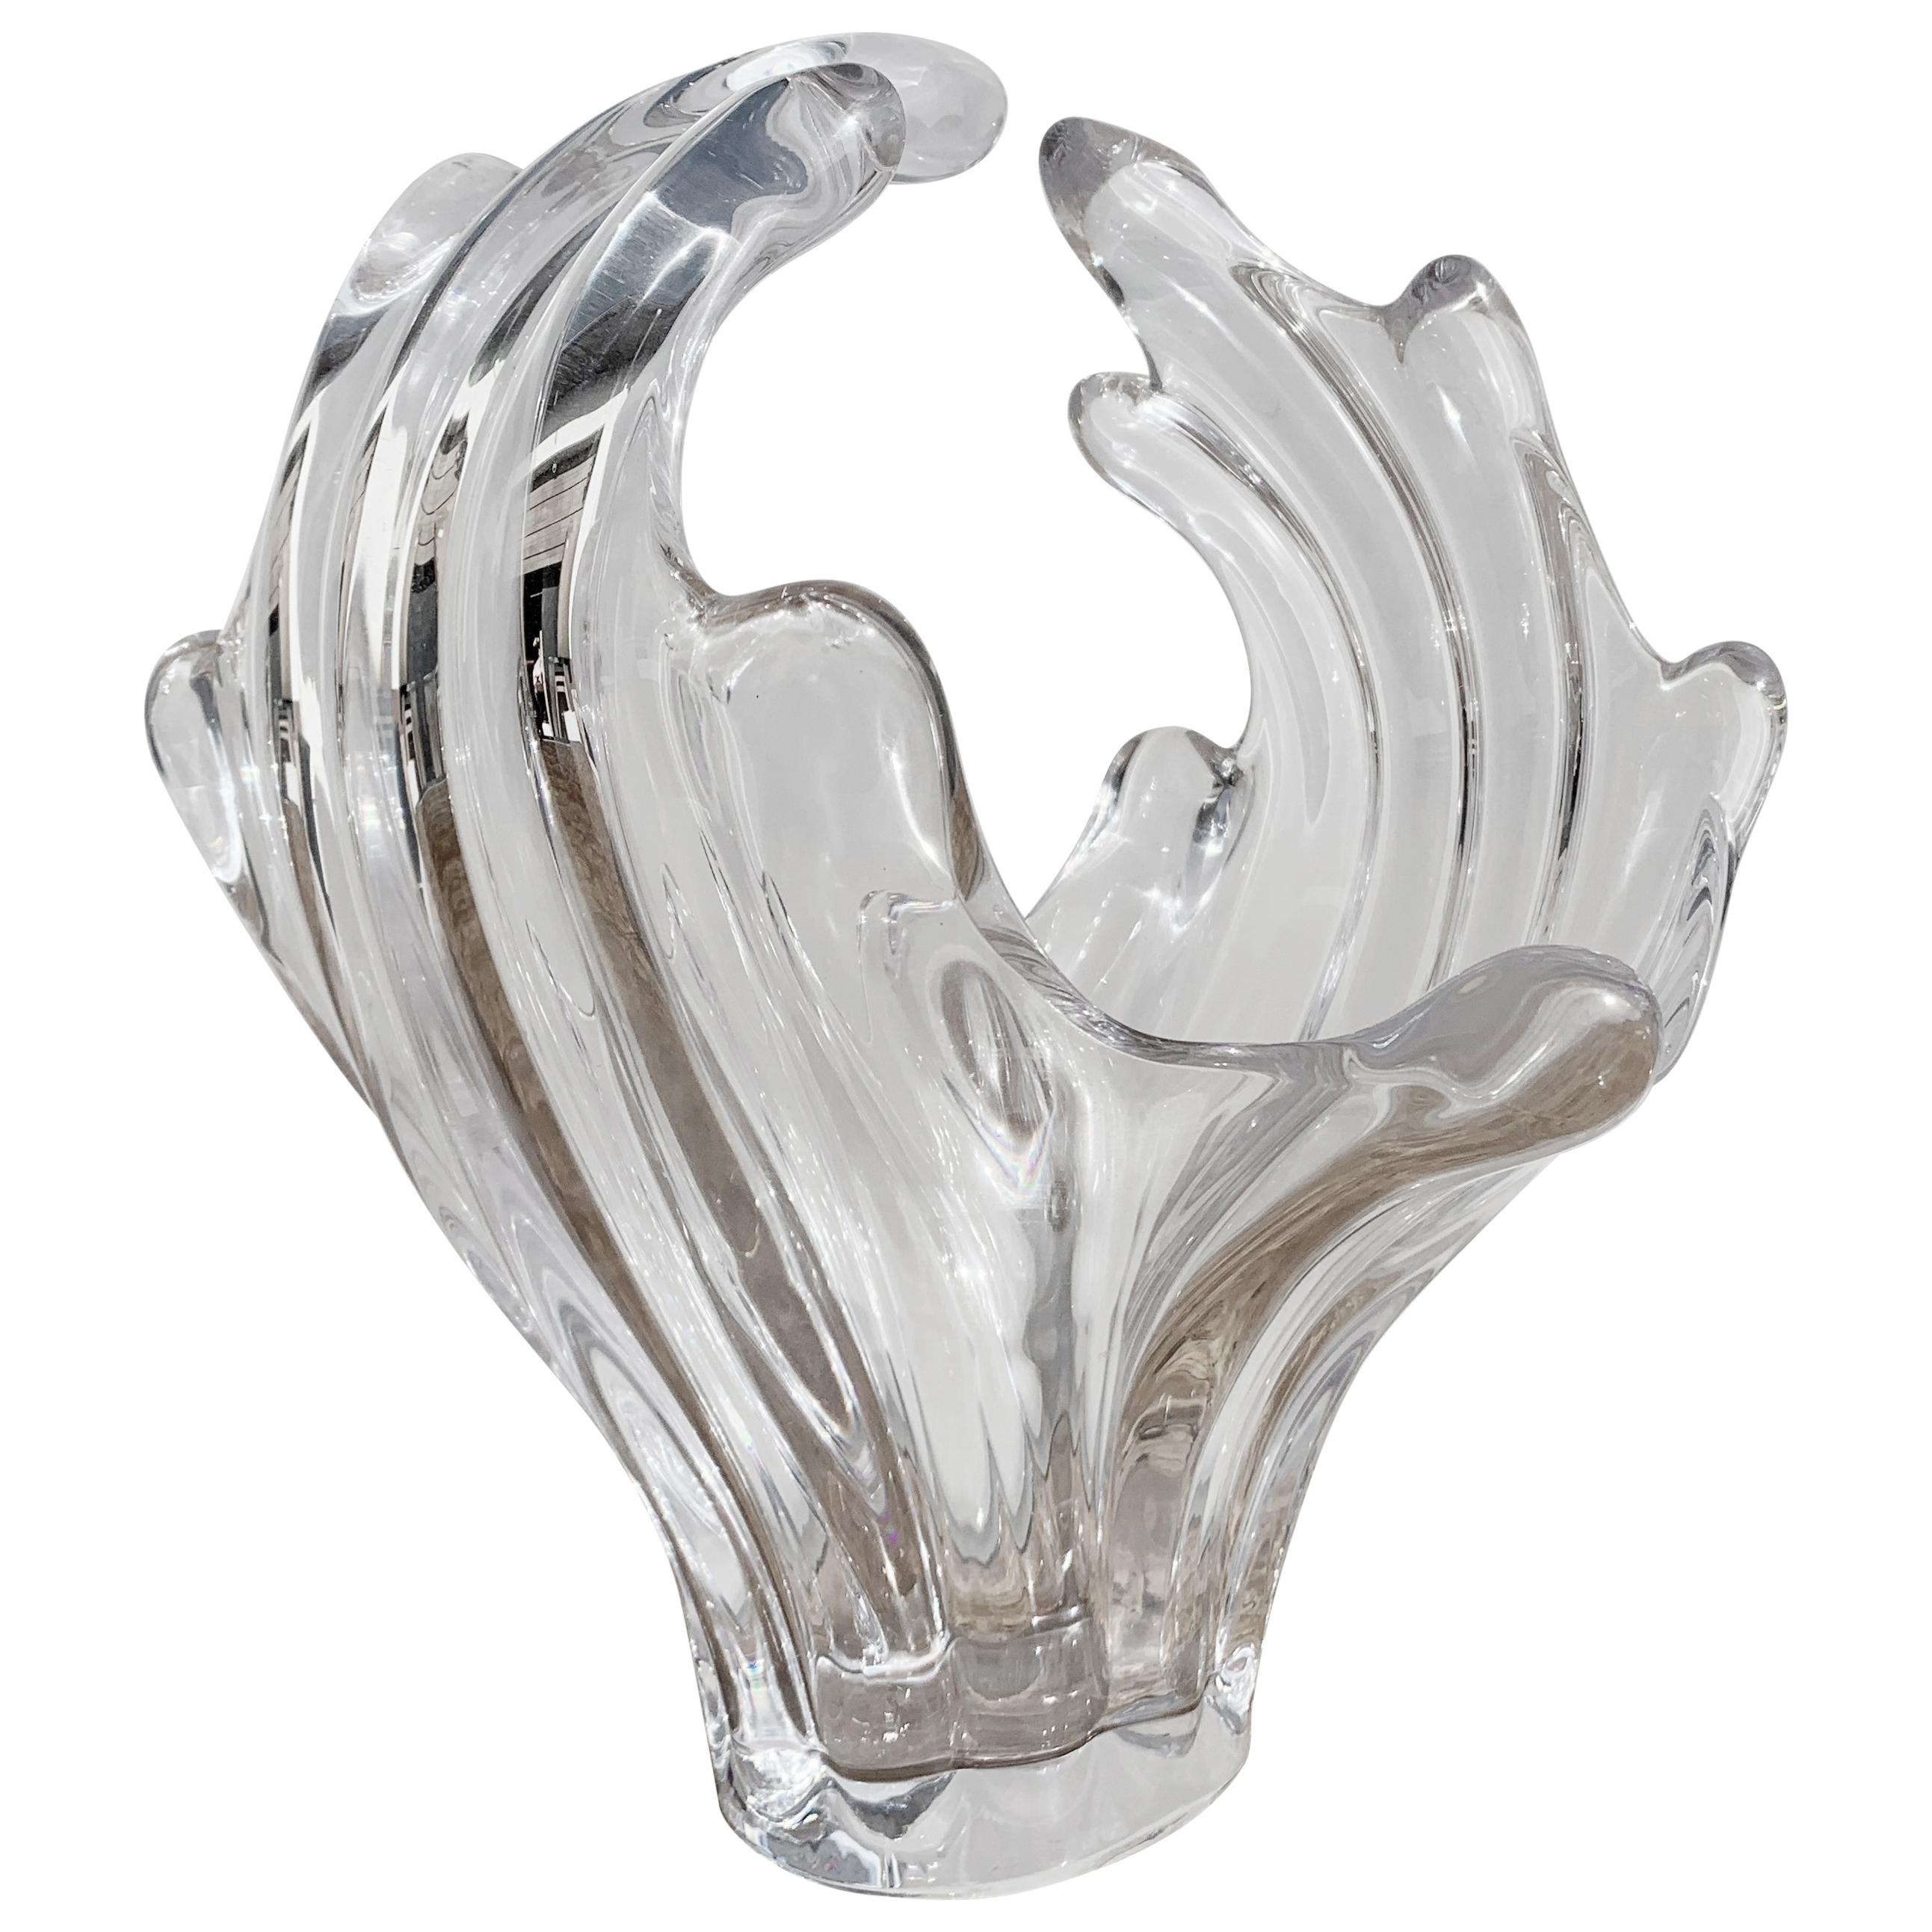 Art Vannes "Le Chantal" Glass Vase For Sale